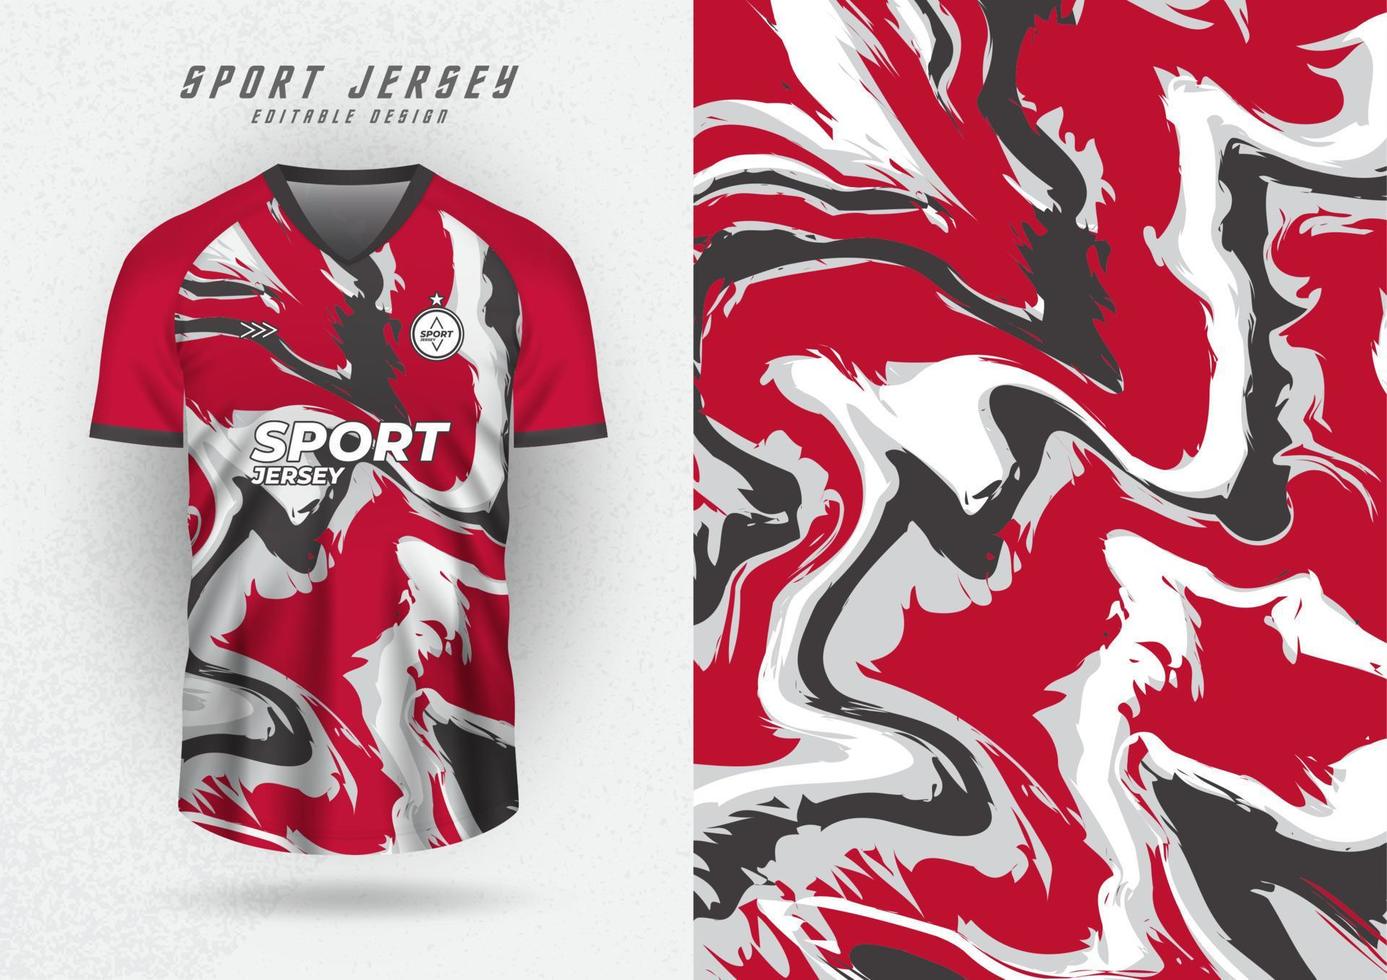 Hintergrund zum Sport Jersey, Fußball Jersey, Laufen Jersey, Rennen Jersey, Wasser Welle Muster im rot Farbe. vektor